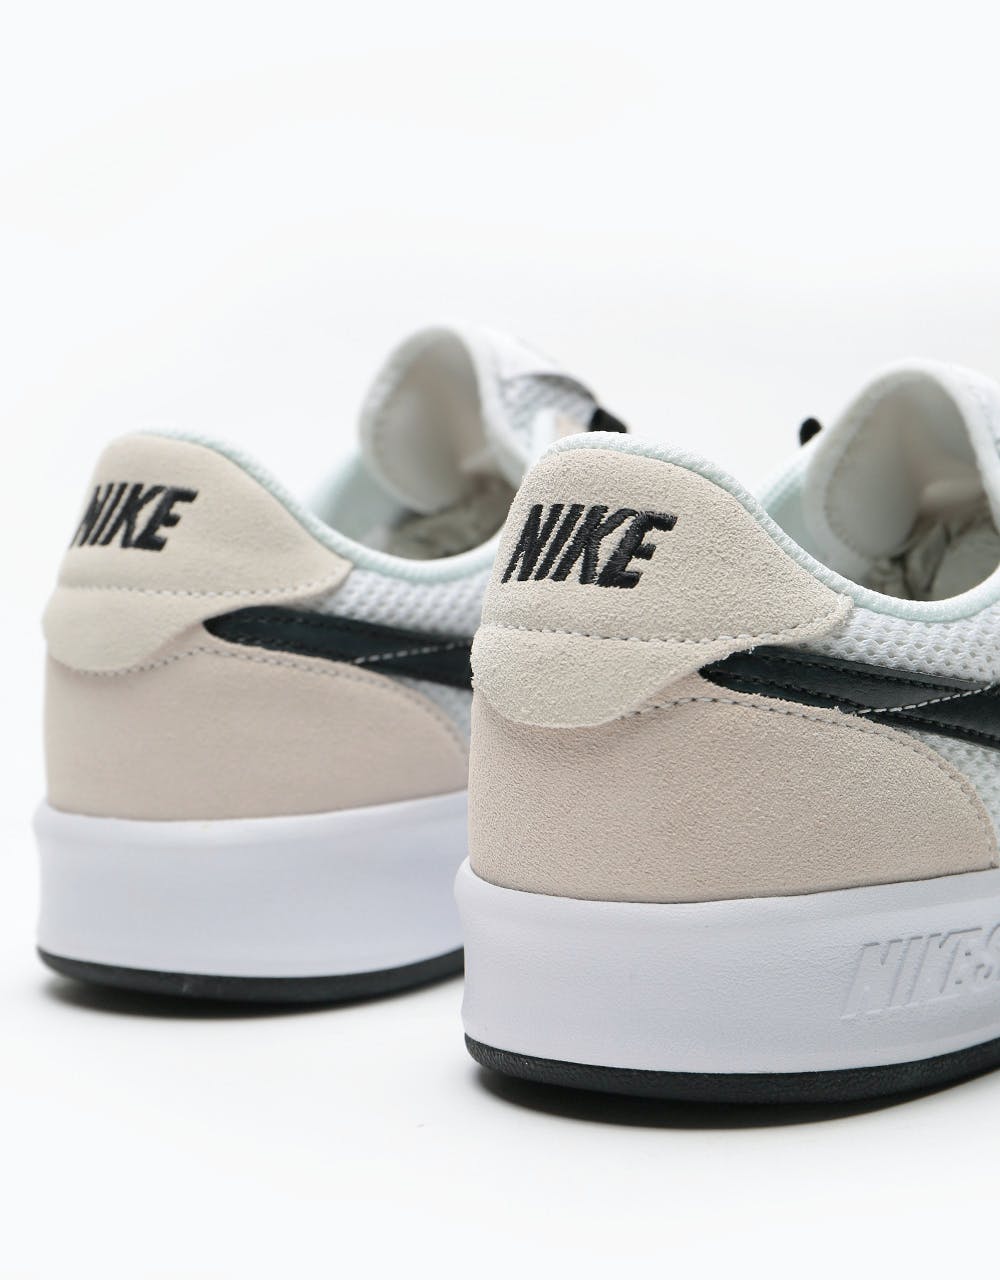 Nike SB Adversary Skate Shoes - White/Black